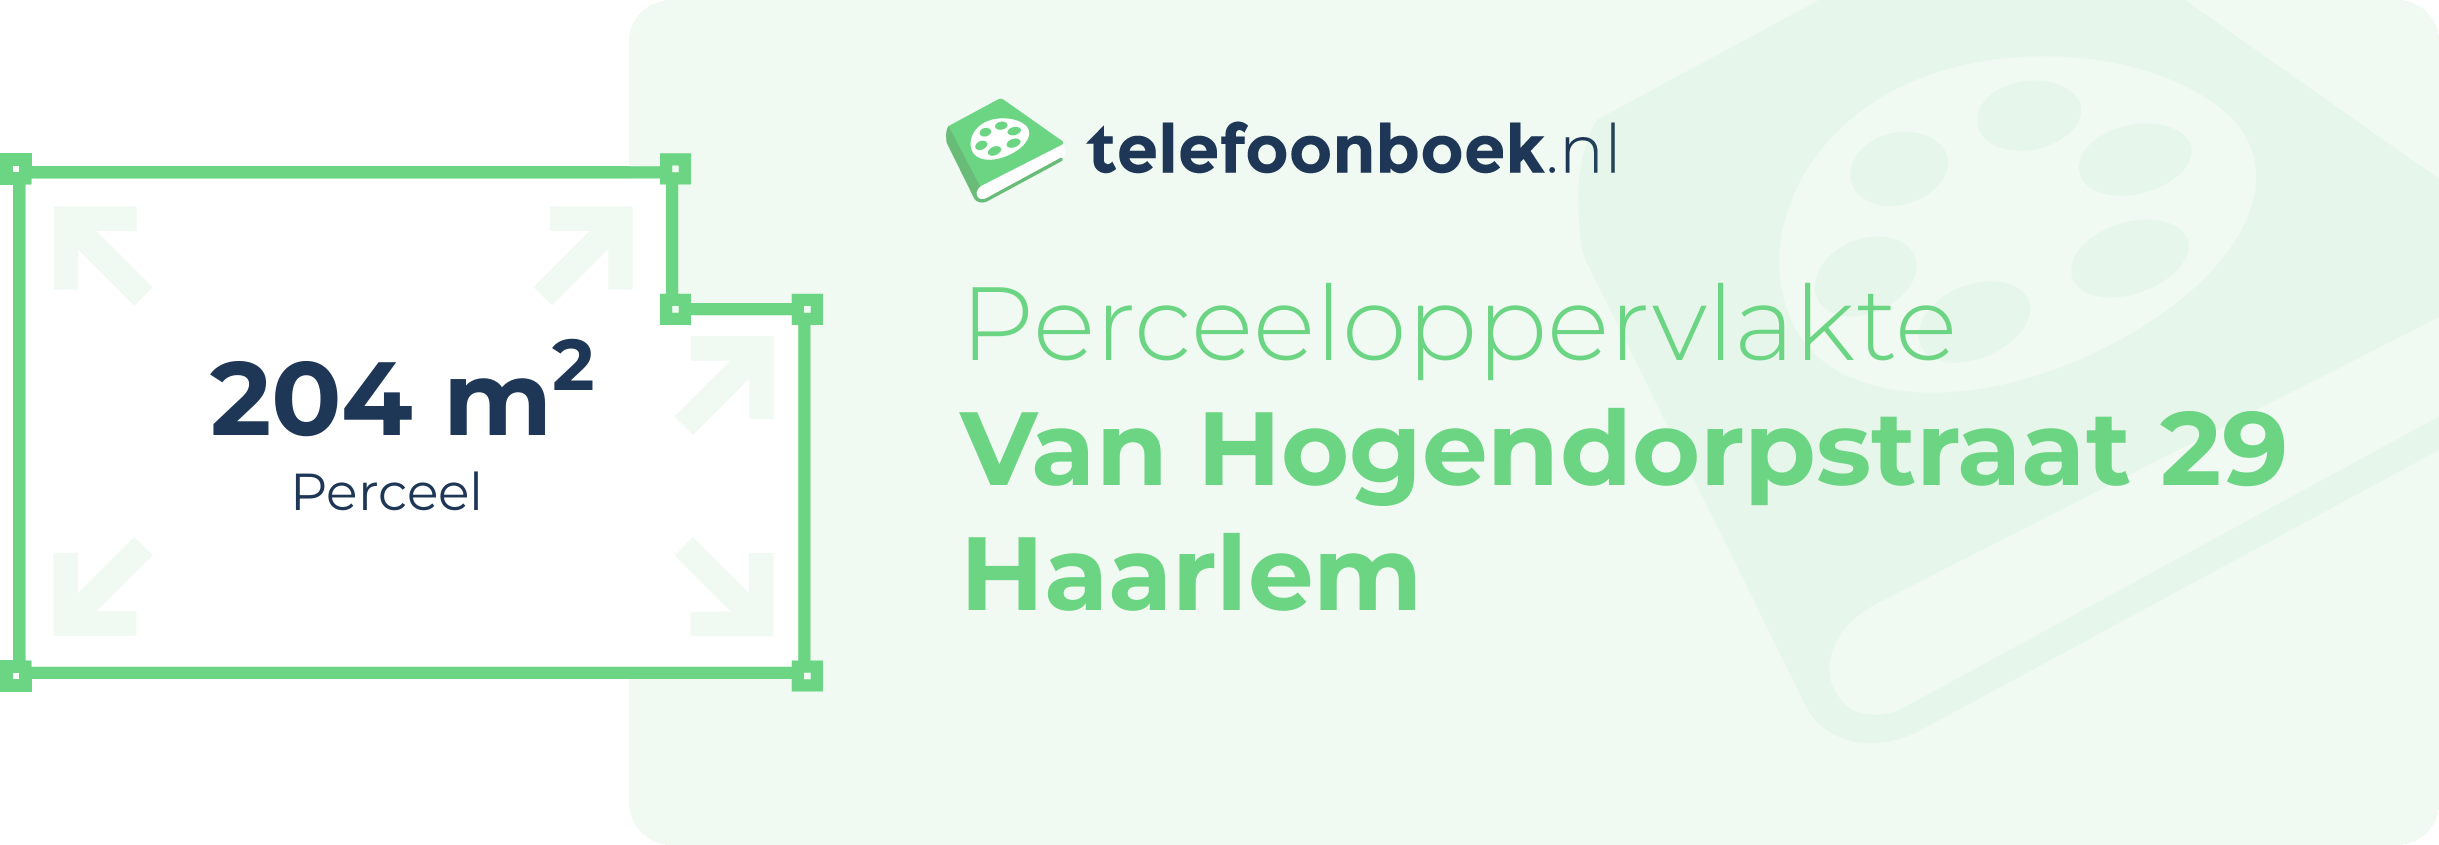 Perceeloppervlakte Van Hogendorpstraat 29 Haarlem